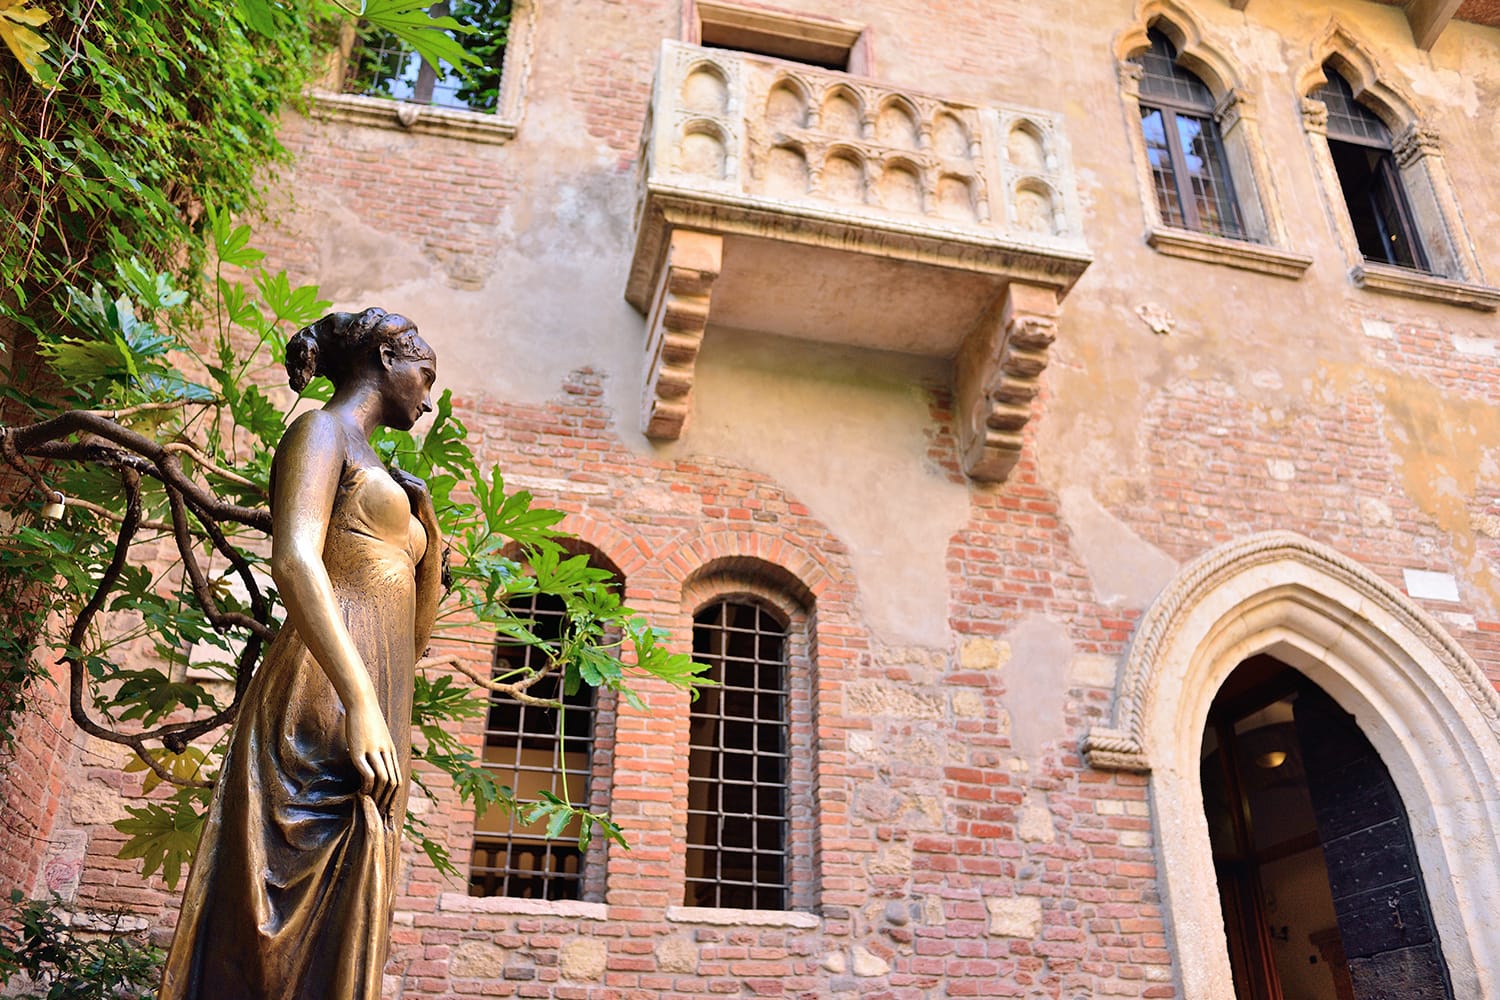 Patio and balcony of Romeo and Juliet house, Verona, Italy